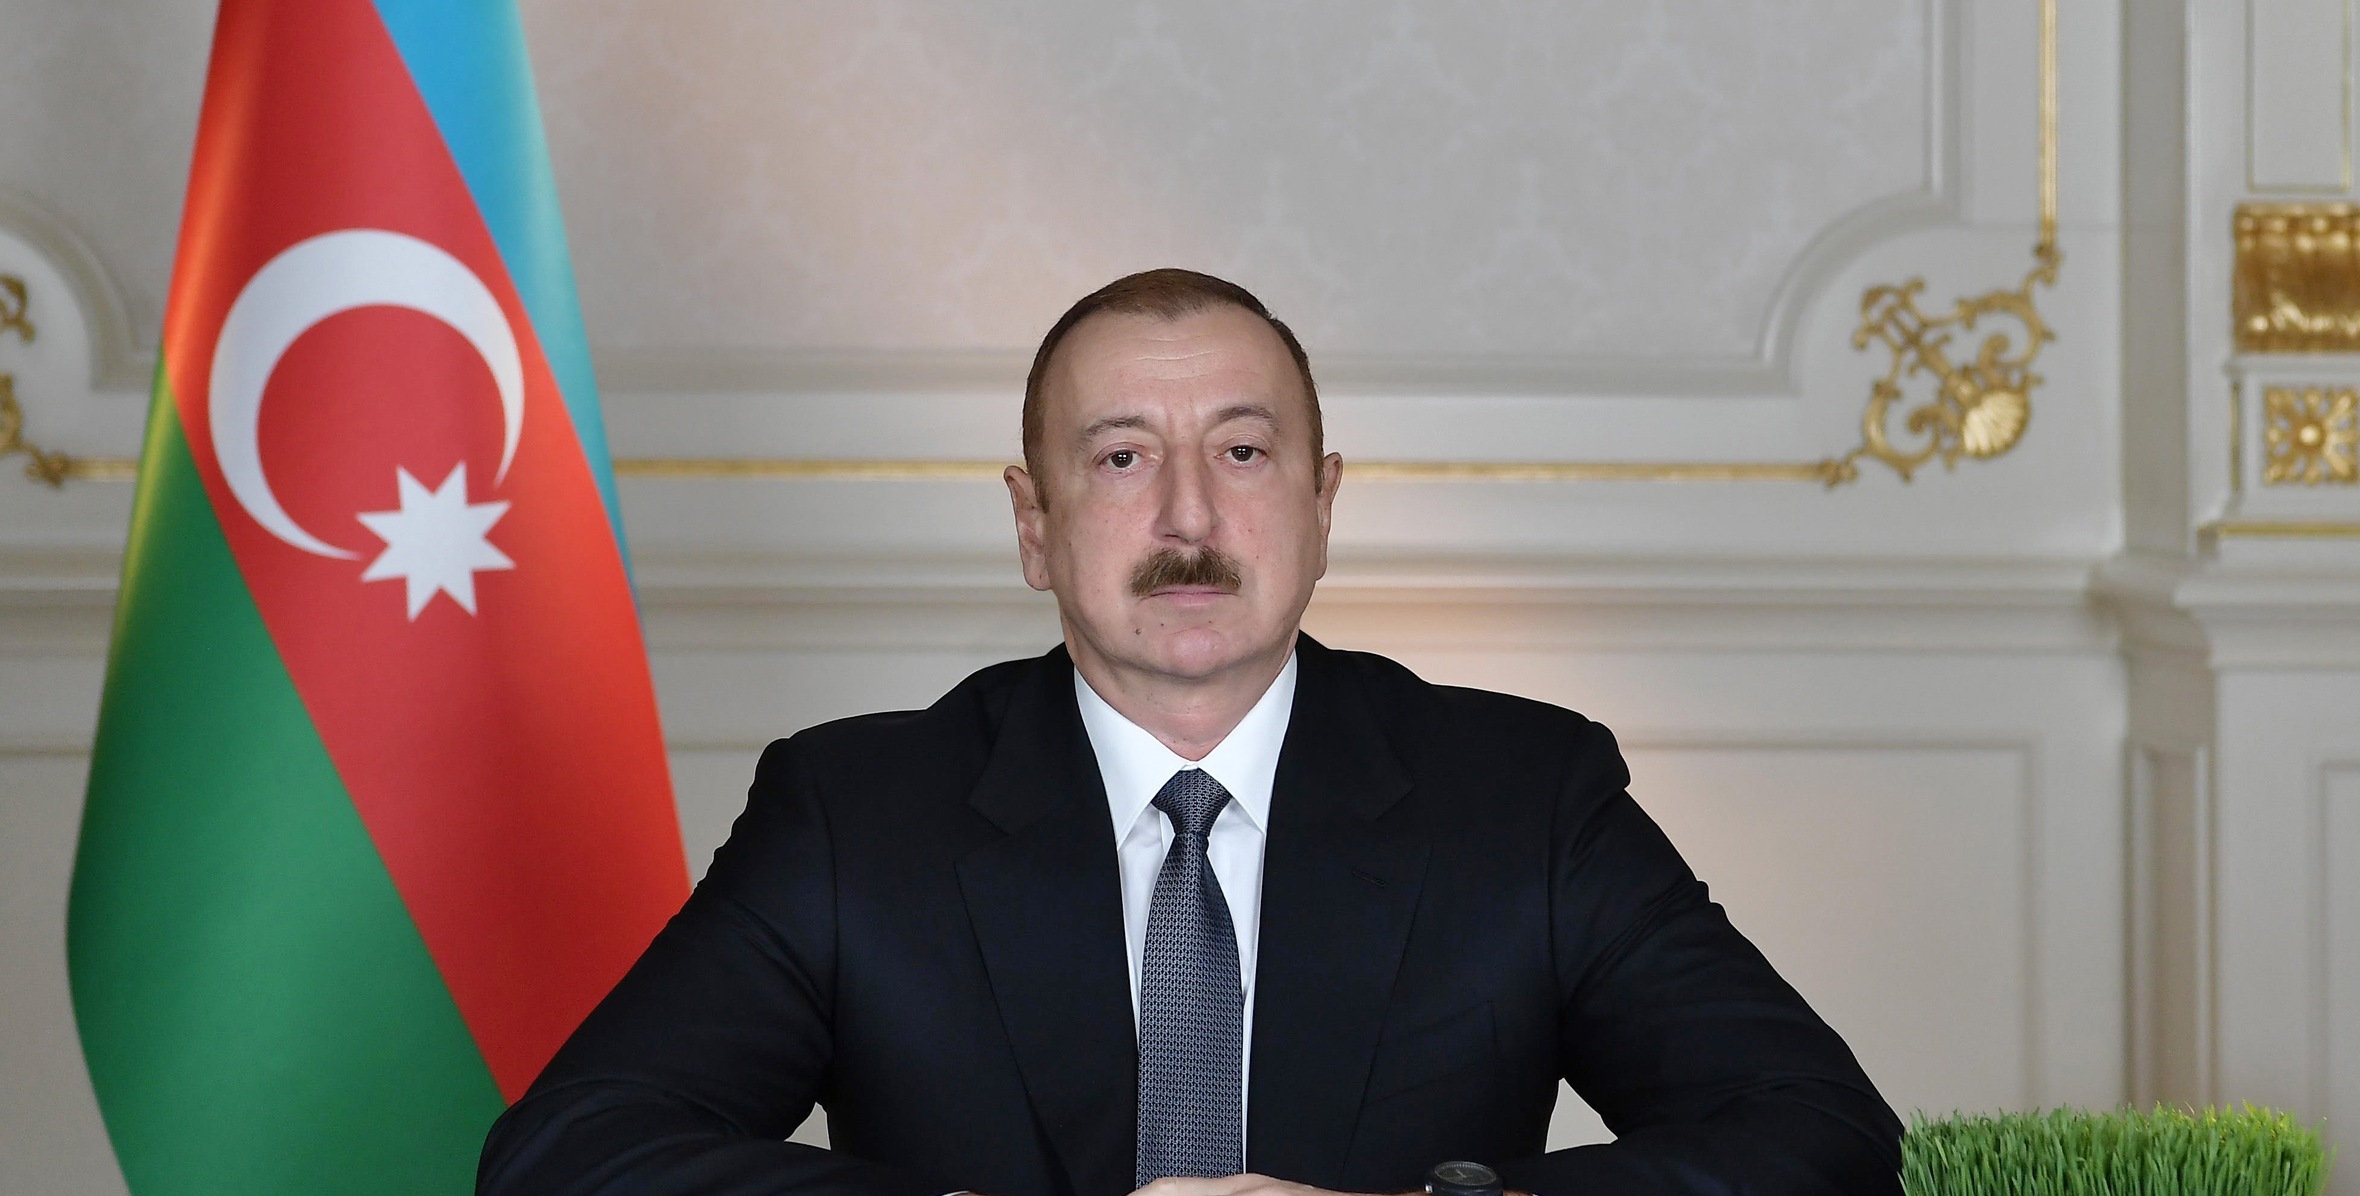 Ι.Αλίγιεφ: «Η Τουρκία δεν συμμετέχει με κανέναν τρόπο στο Ναγκόρνο-Καραμπάχ – Είναι φήμες»